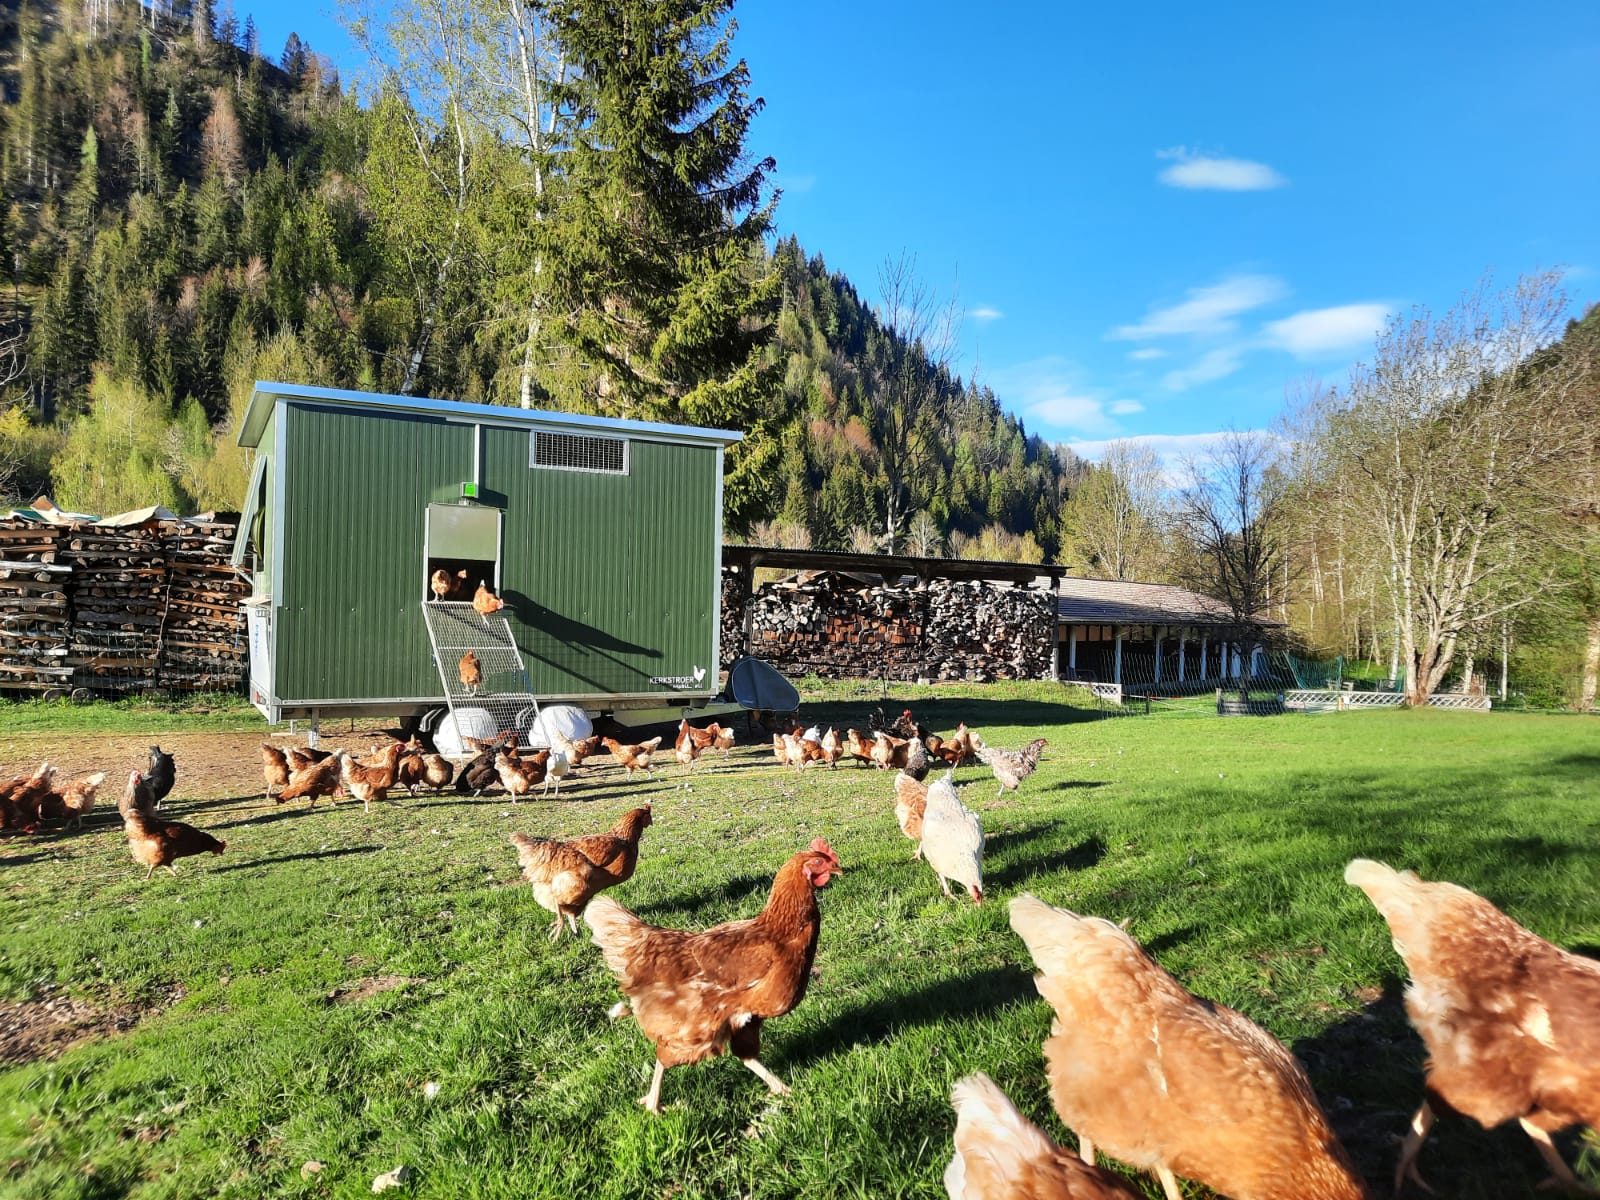 Das Nachtquartier der Hühner - tagsüber genießen sie den großzügigen Freilauf 
© Eva Pronebner-Stock